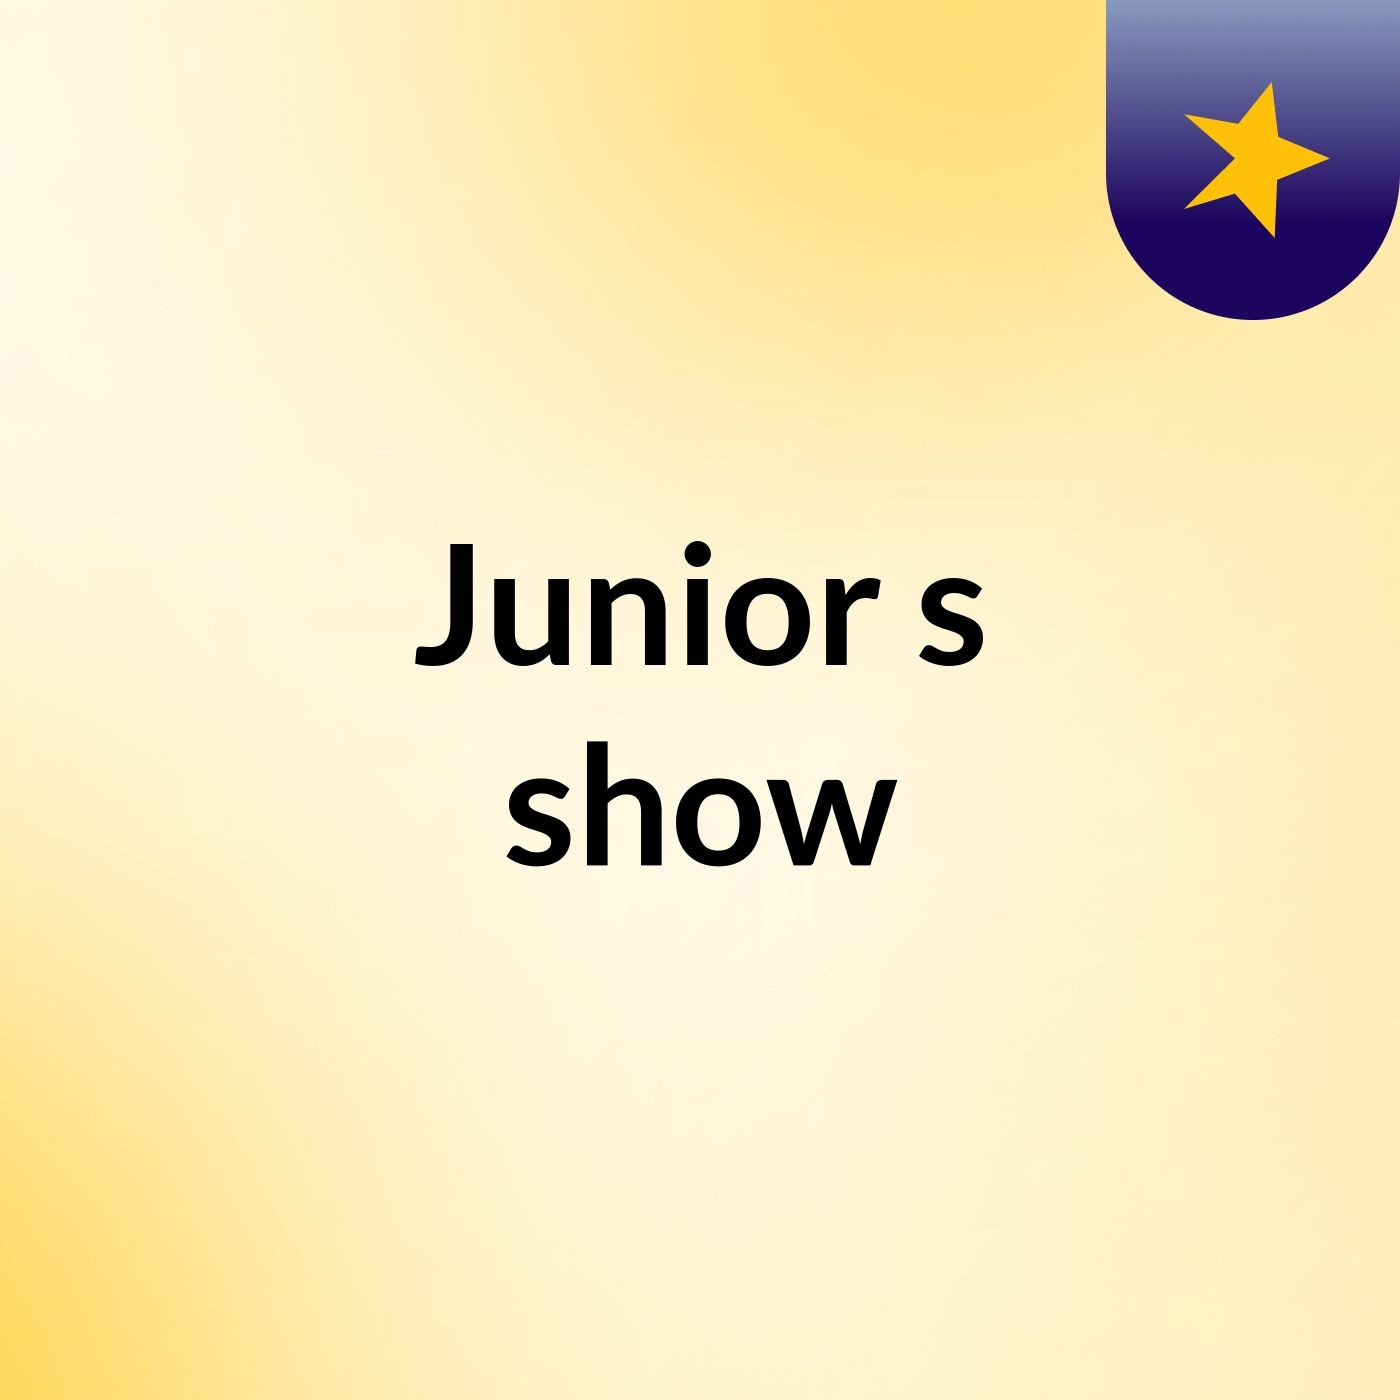 Junior's show